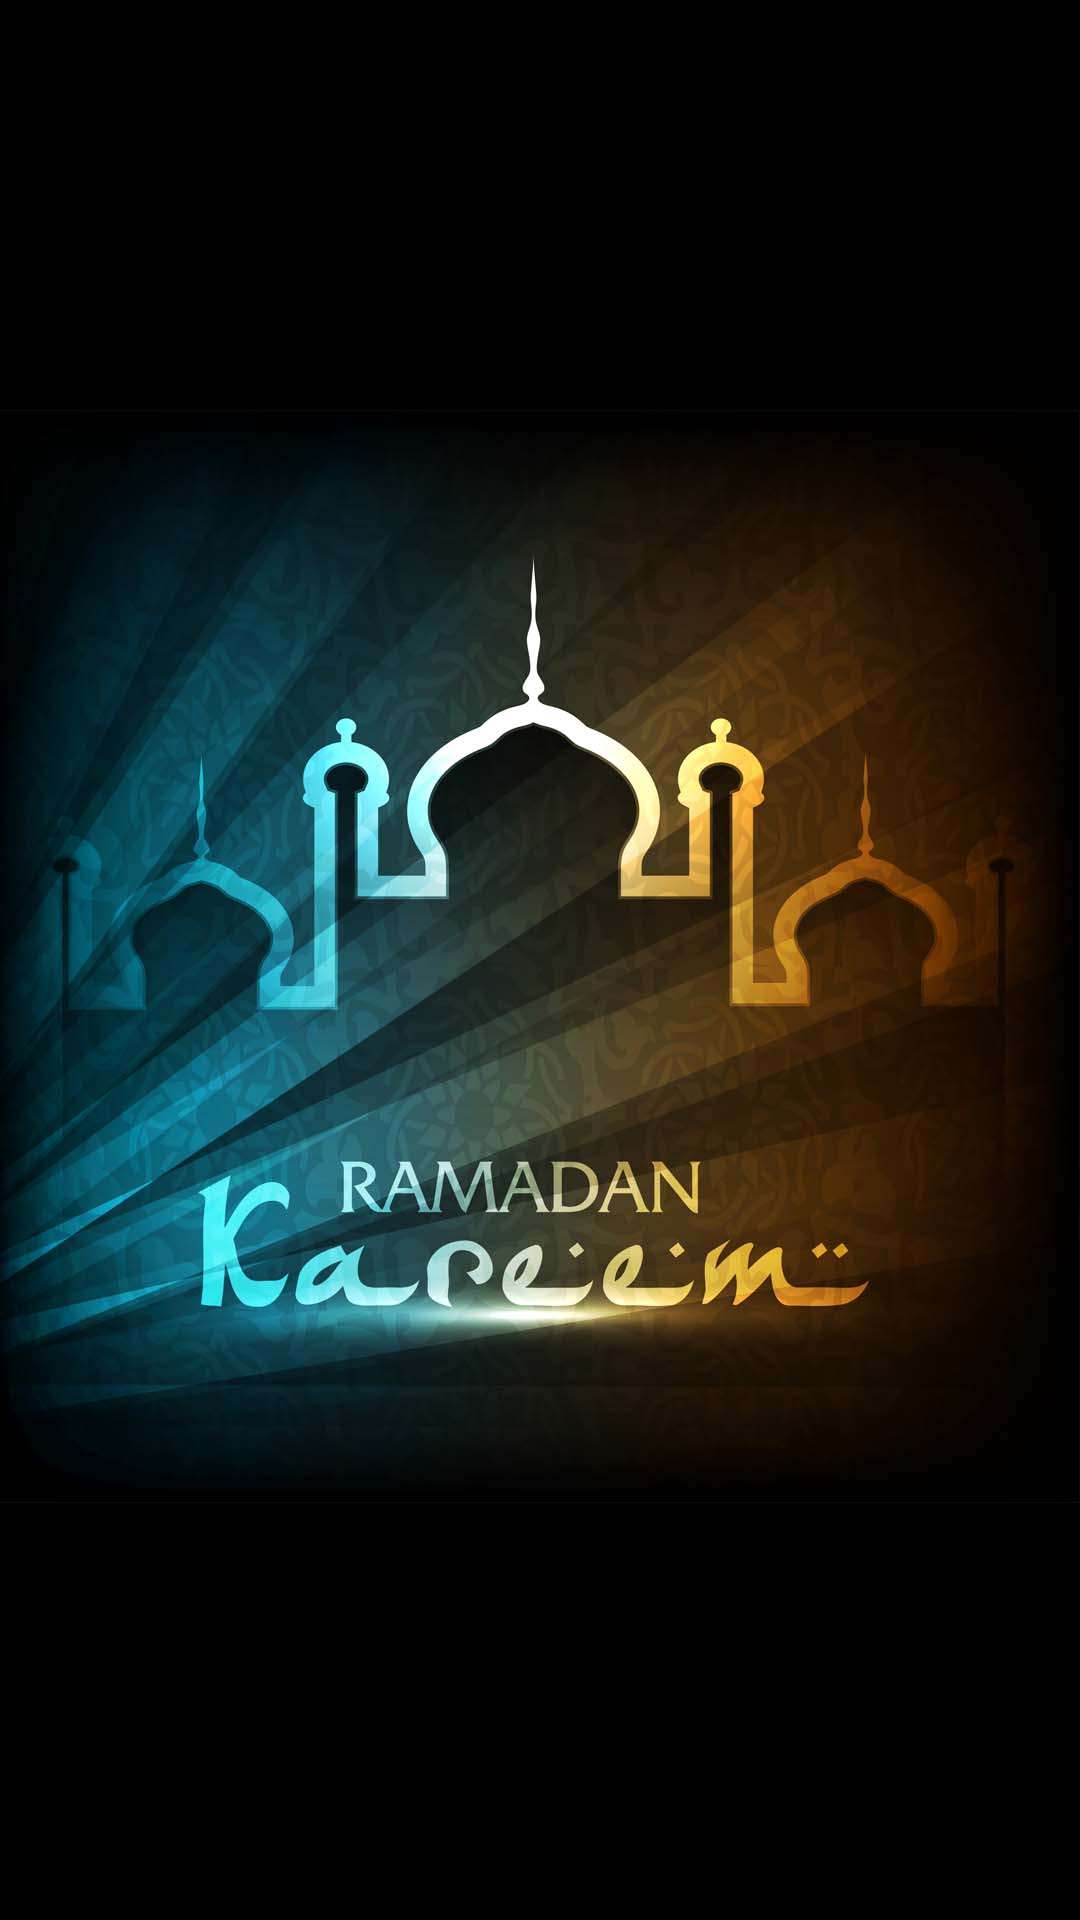 اجمل خلفيات الموبايل بمناسبه شهر رمضان 2020 HD-10